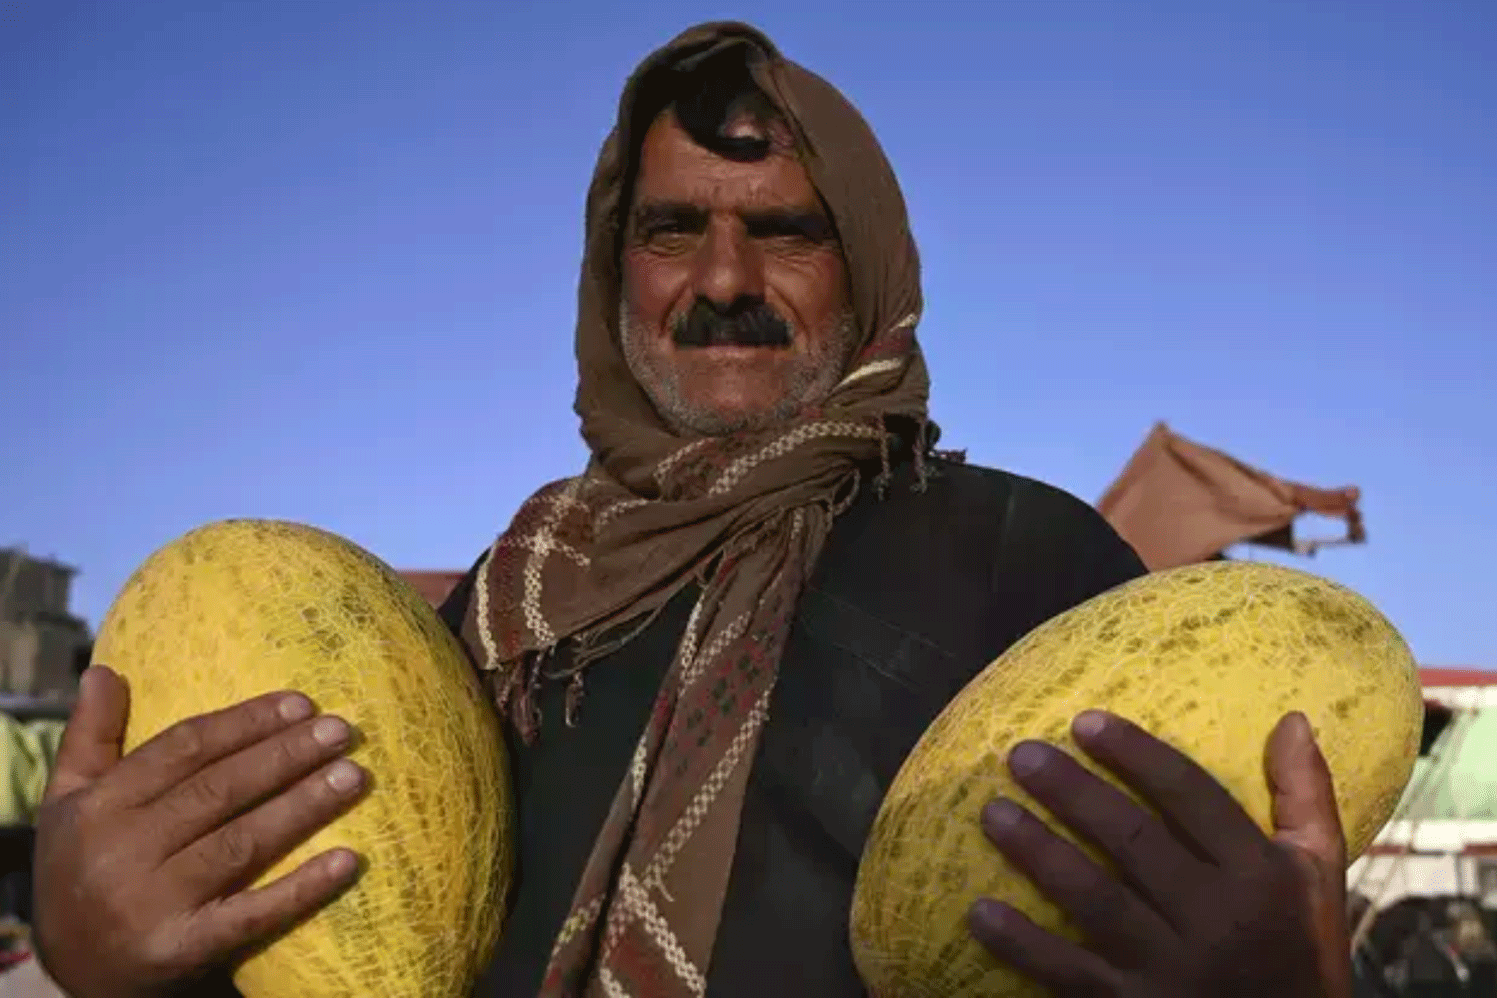 بائع يحمل البطيخ وينتظر الزبائن في سوق للفاكهة قبيل حلول الأضحى في كابول يوم 28 يوليو